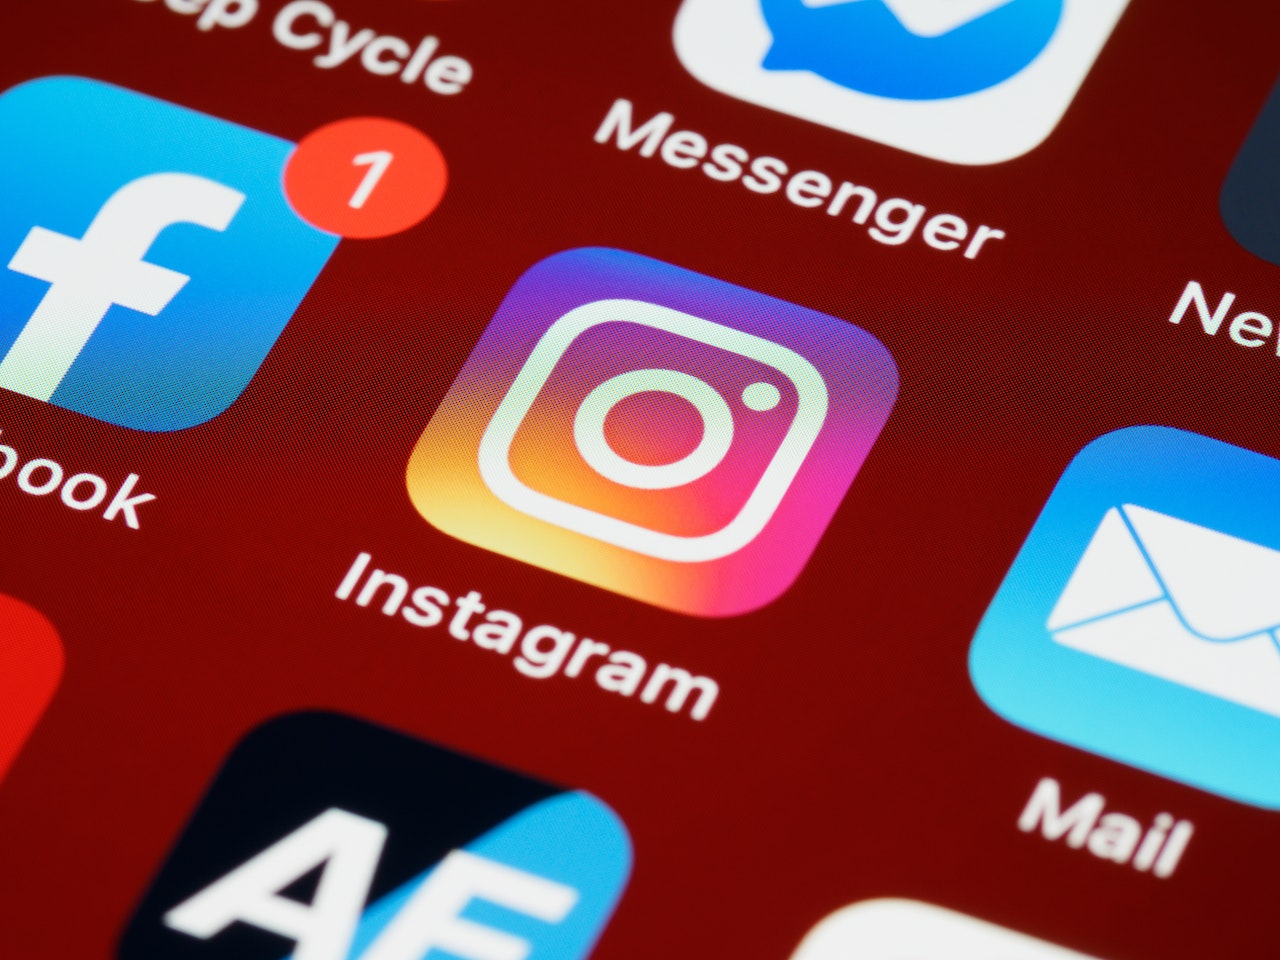 Instagram sosyal medya platformunun popüler simgesinin, dikkat çekici bir şekilde gösterildiği, modern ve görsel olarak zengin bir fotoğraf